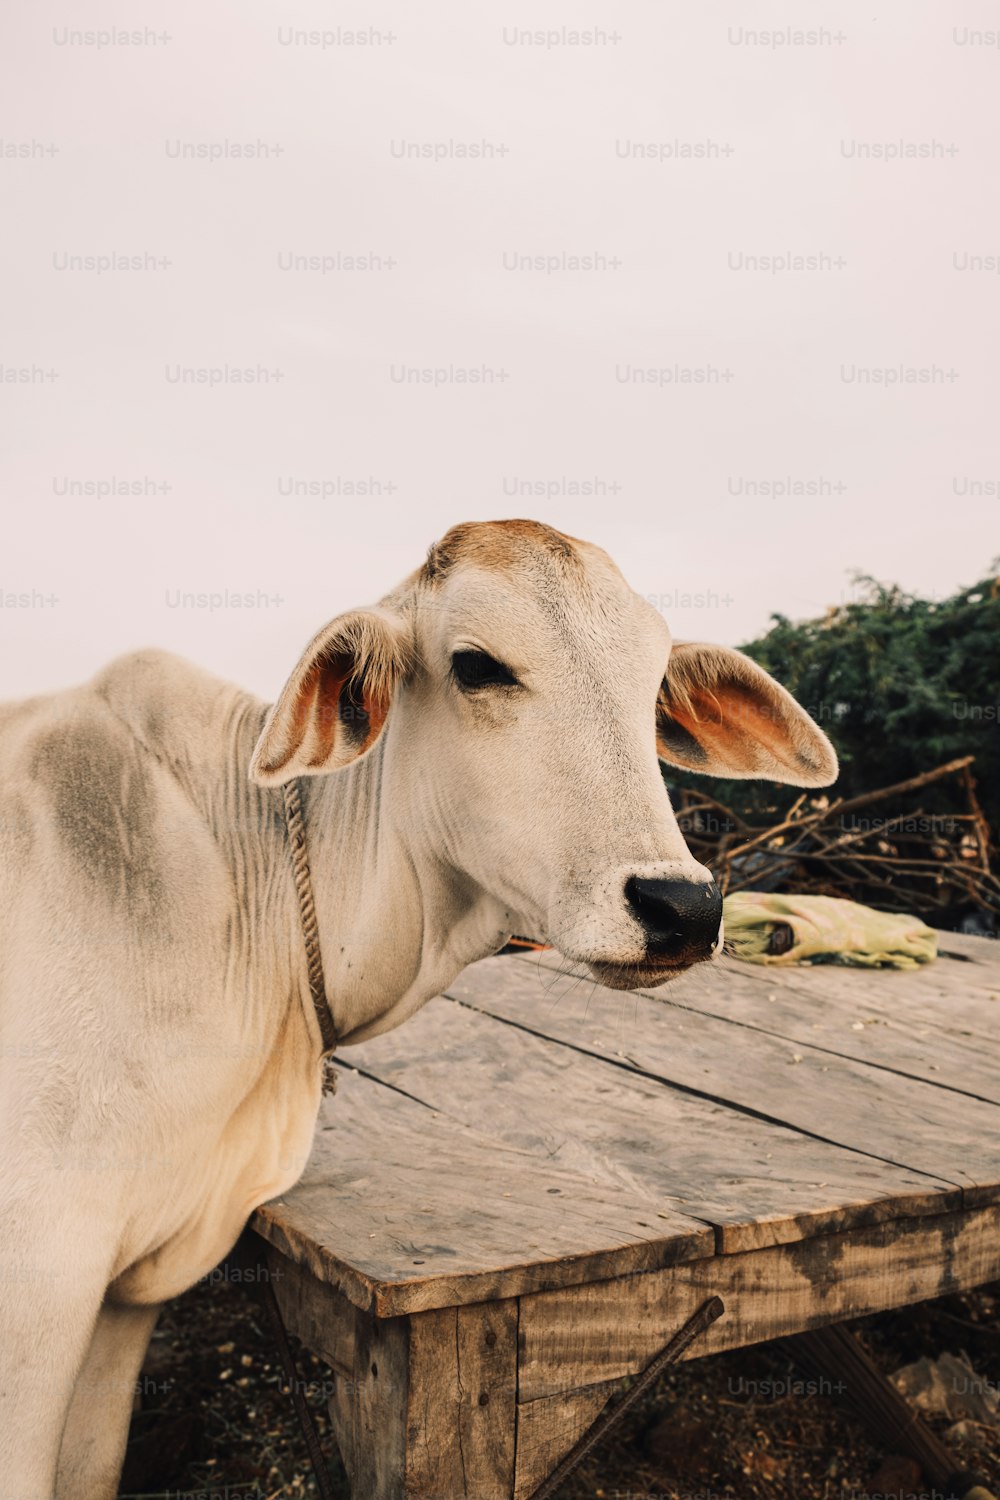 une vache blanche debout sur une table en bois